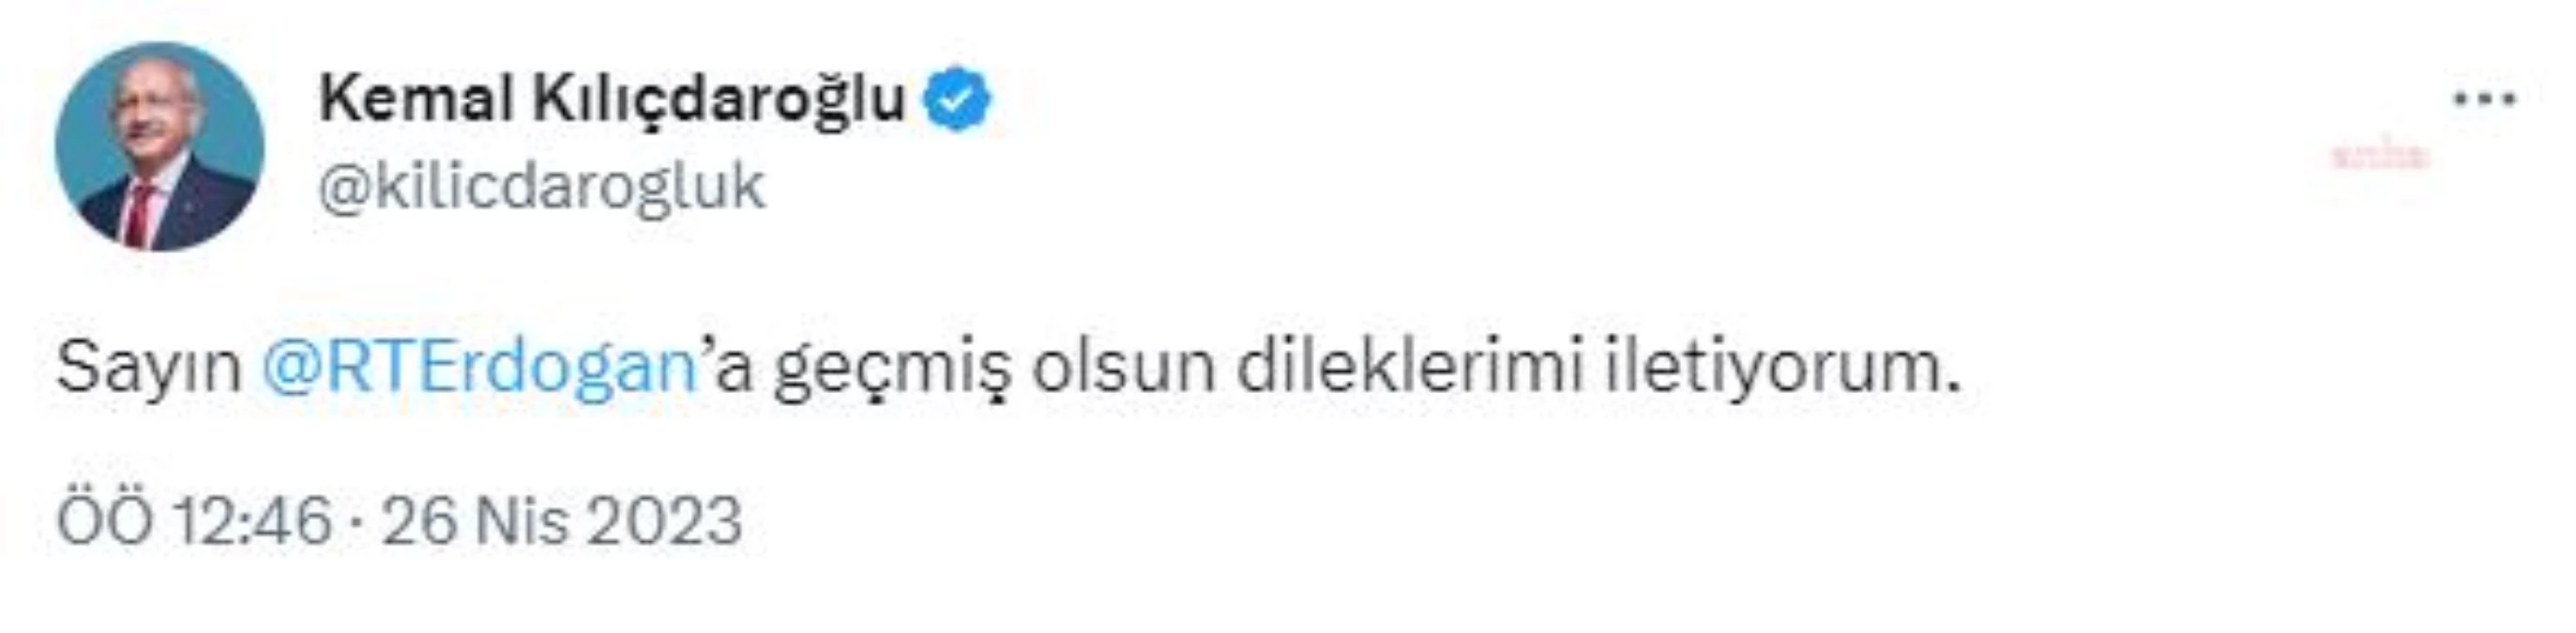 Kılıçdaroğlu, Erdoğan'a Geçmiş Olsun Diledi